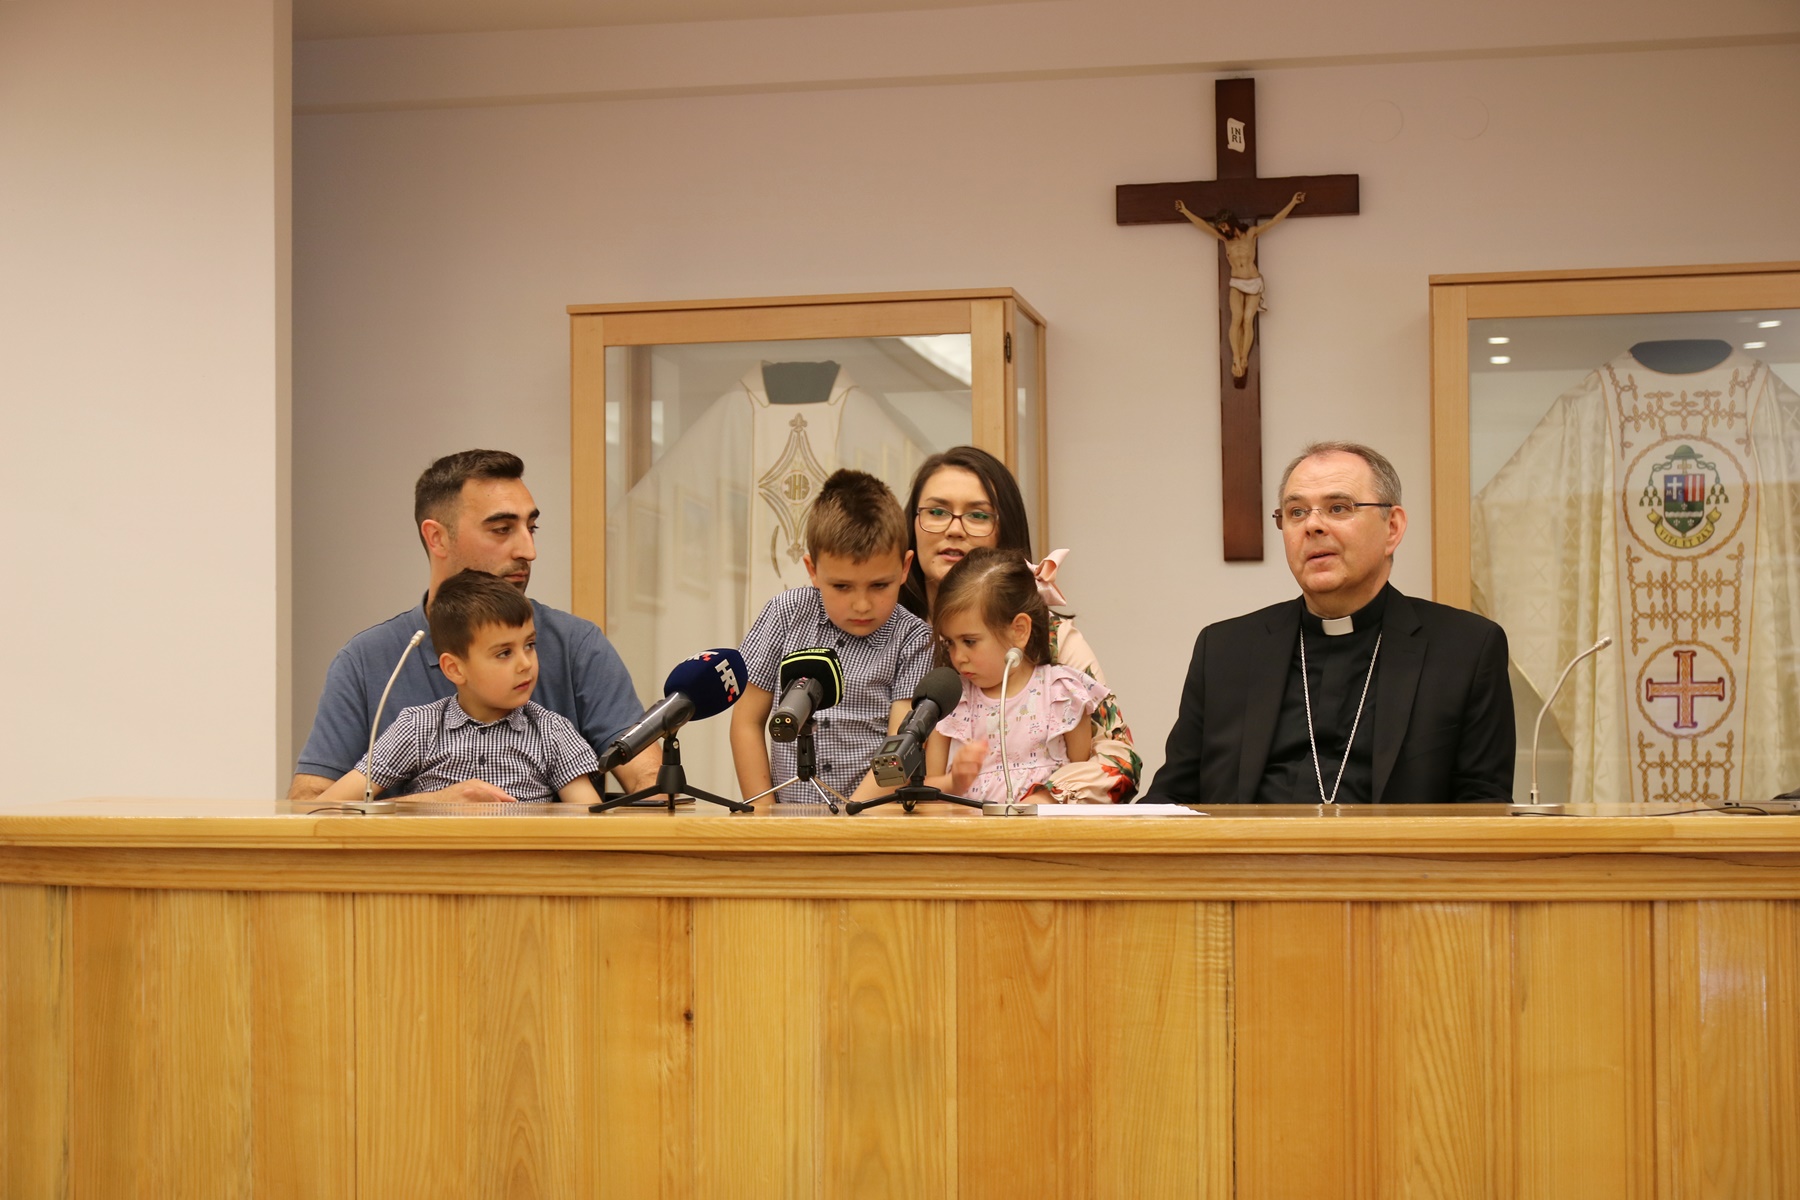 Najavljen program 4. nacionalnog susreta hrvatskih katoličkih obitelji u Ludbregu